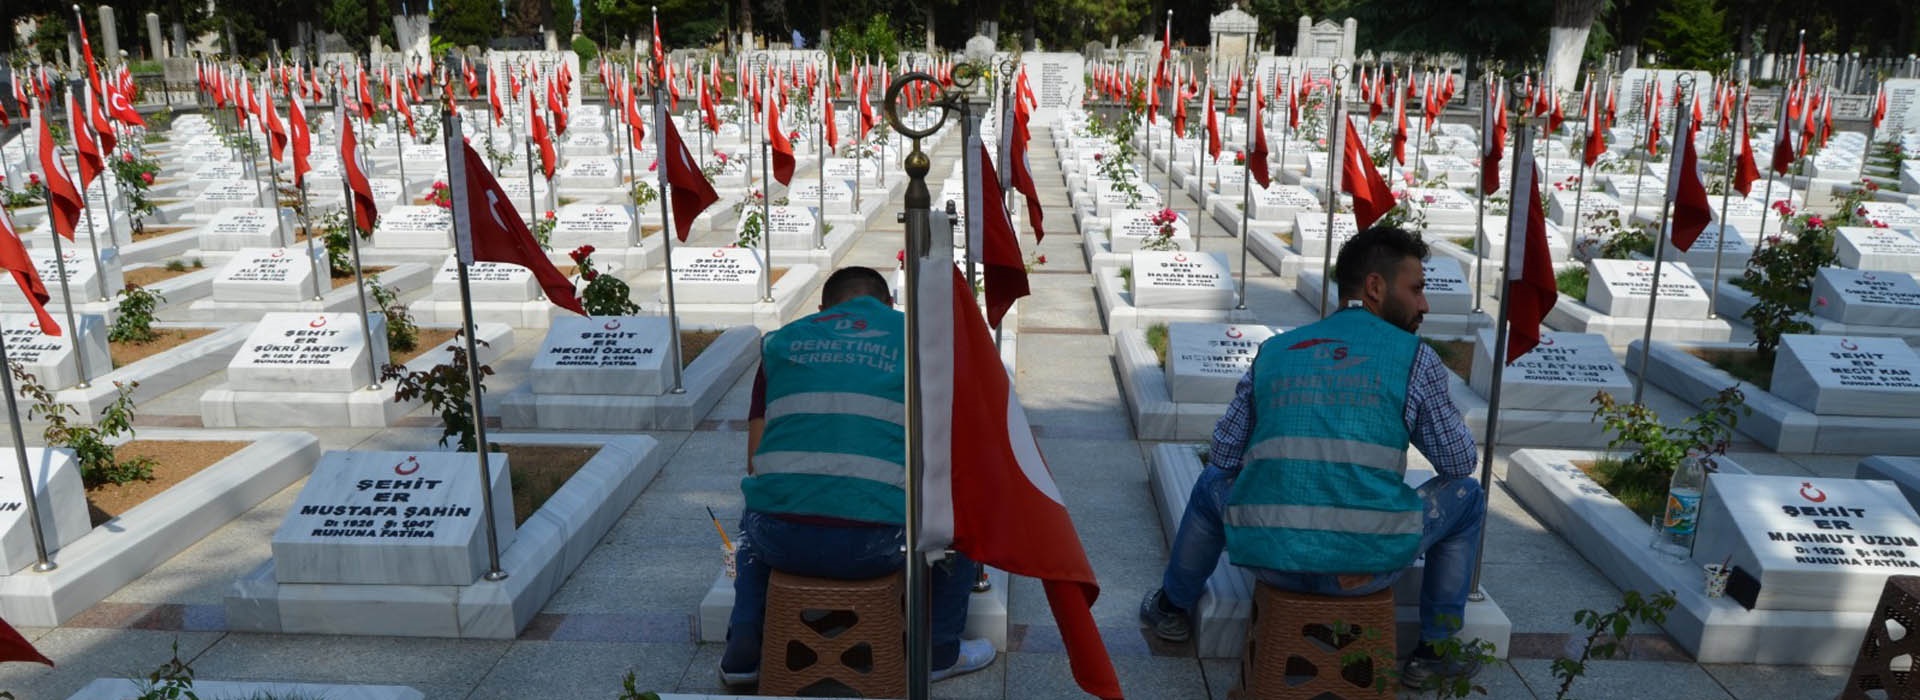 Kamu Hizmeti Cezası Uygulanan Yükümlüler Şehit Mezarlarının Bakım ve Onarım İşlerini Yaptılar